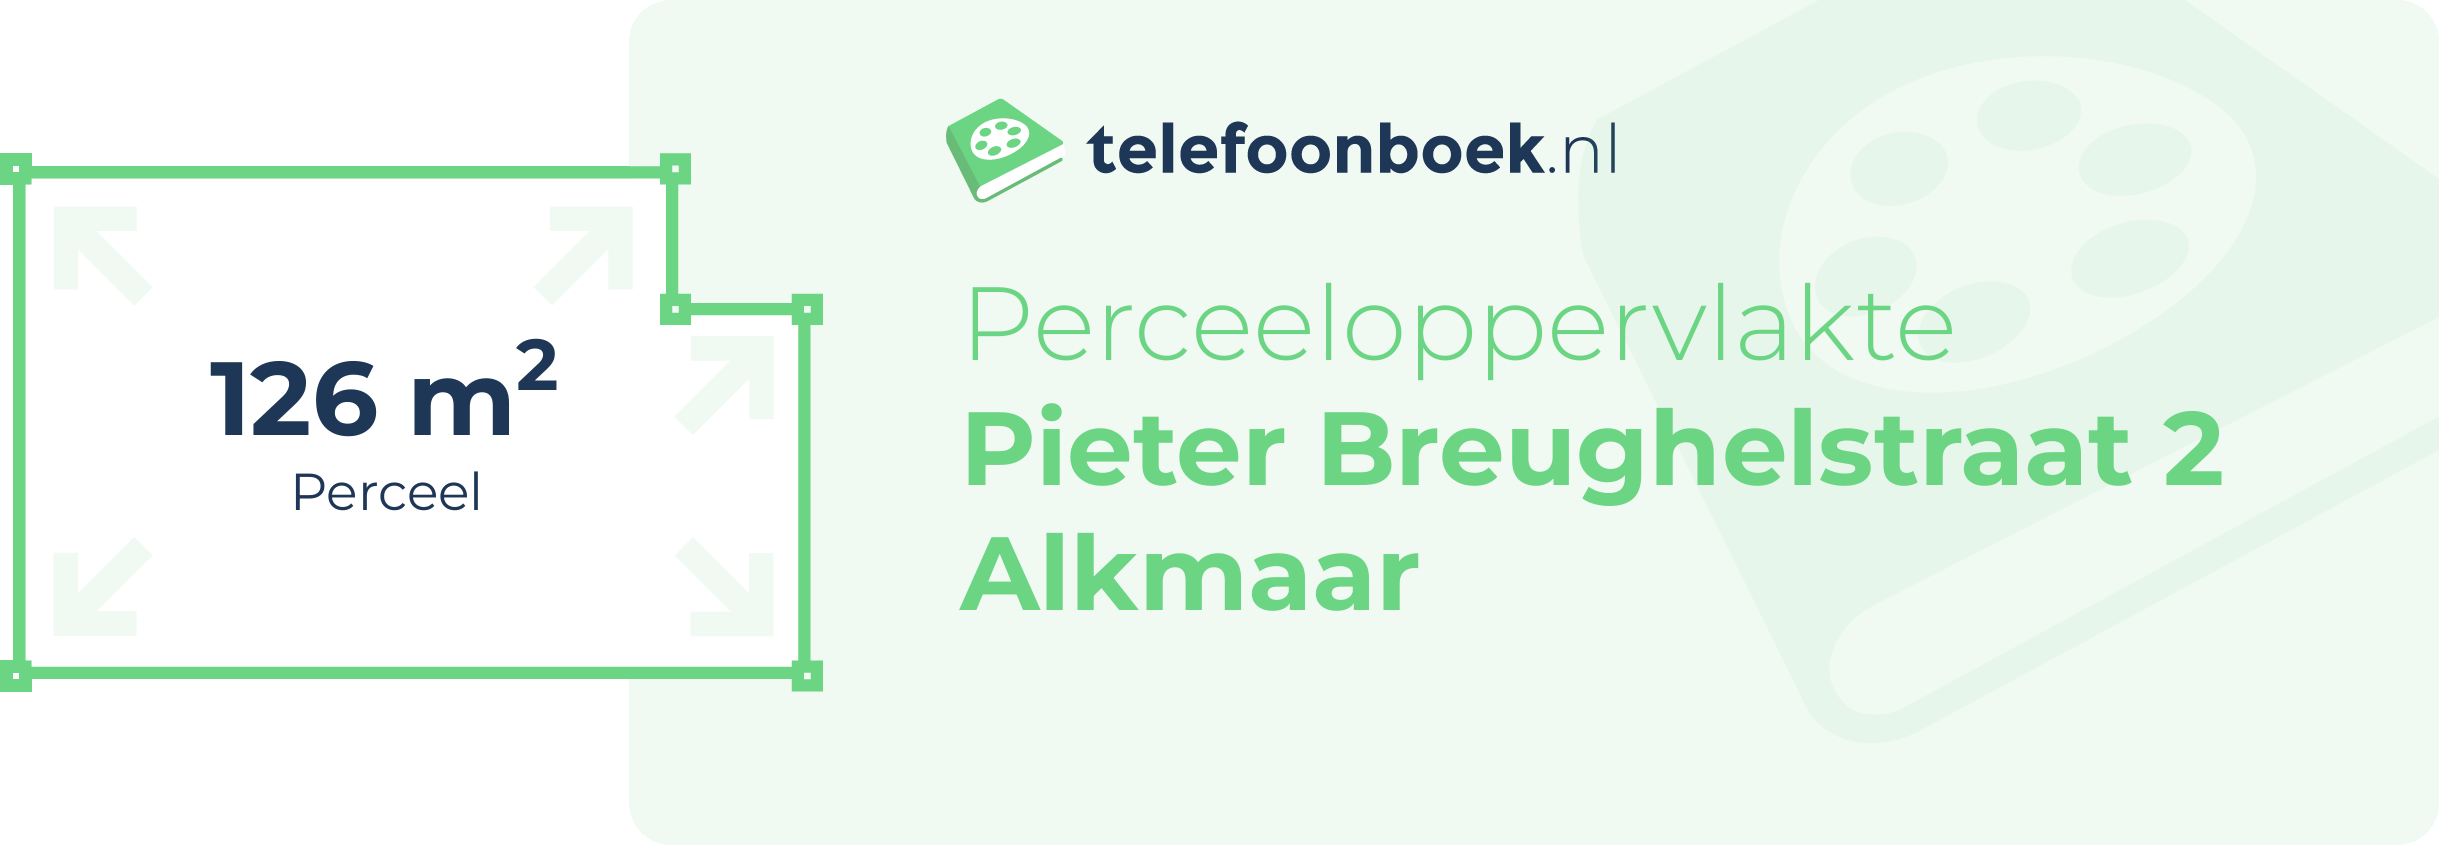 Perceeloppervlakte Pieter Breughelstraat 2 Alkmaar